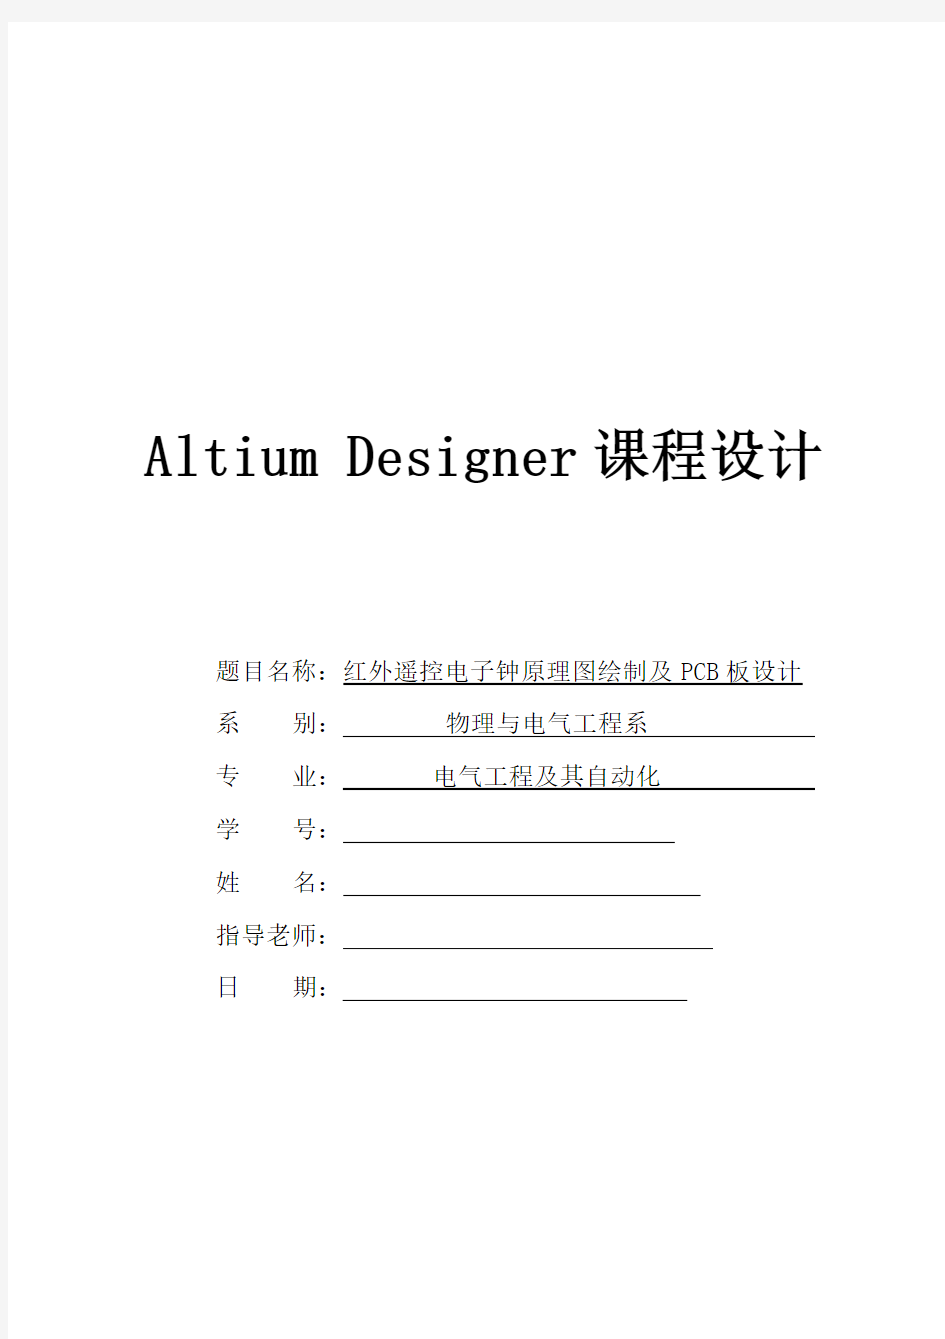 altium designer报告